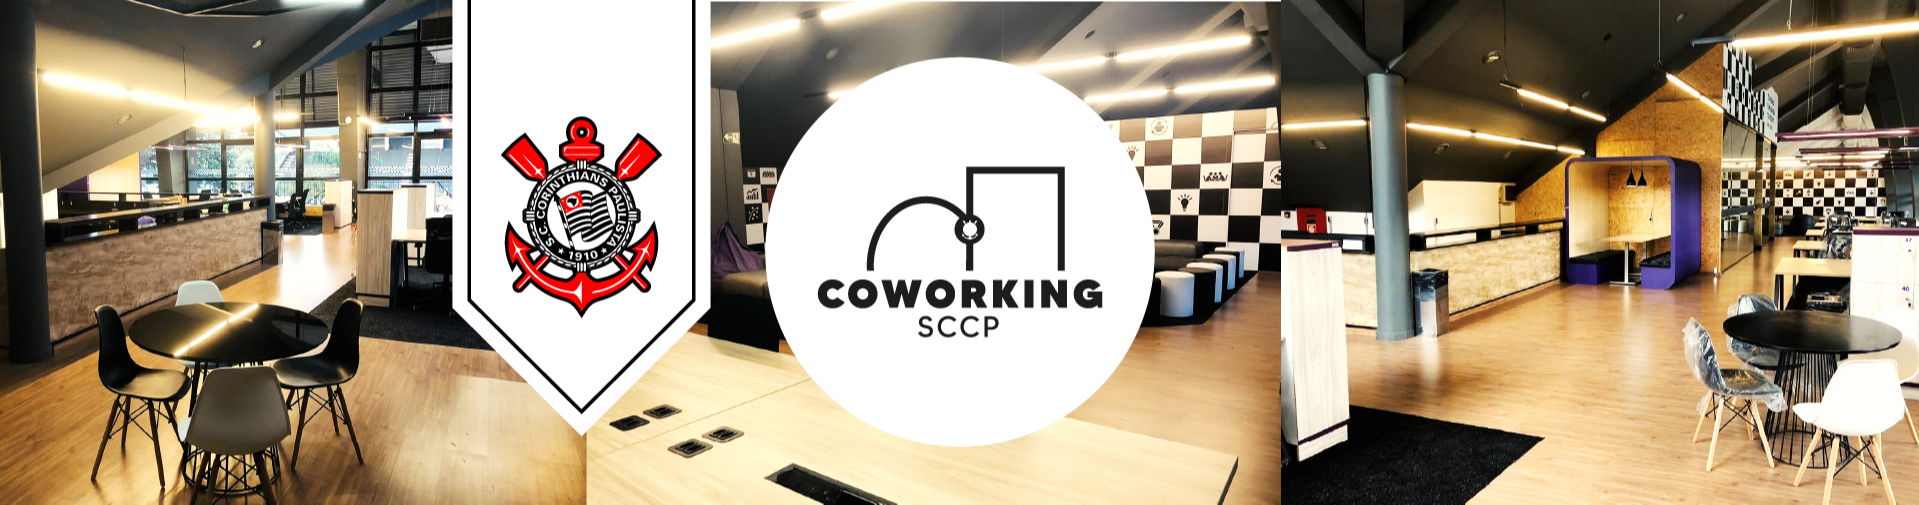 COWORKING SCCP: Corinthians inaugura área de trabalho de uso coletivo na sede social